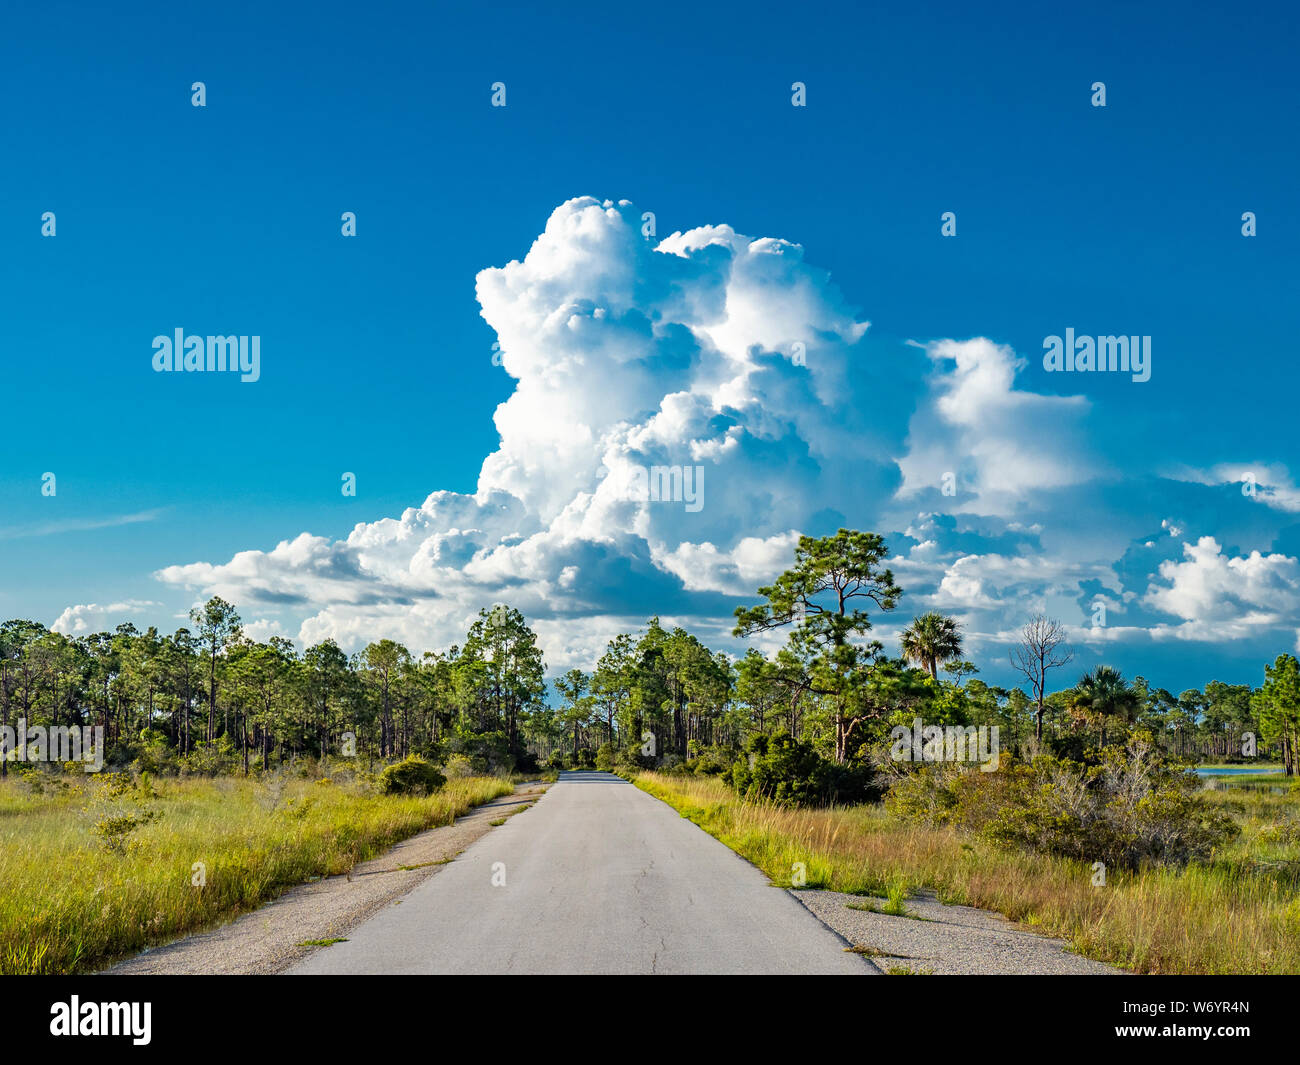 Big White Sommer Cumulonimbuswolken über Babcock-Webb Wildlife Management Area in Punta Gorda, Florida. Stockfoto